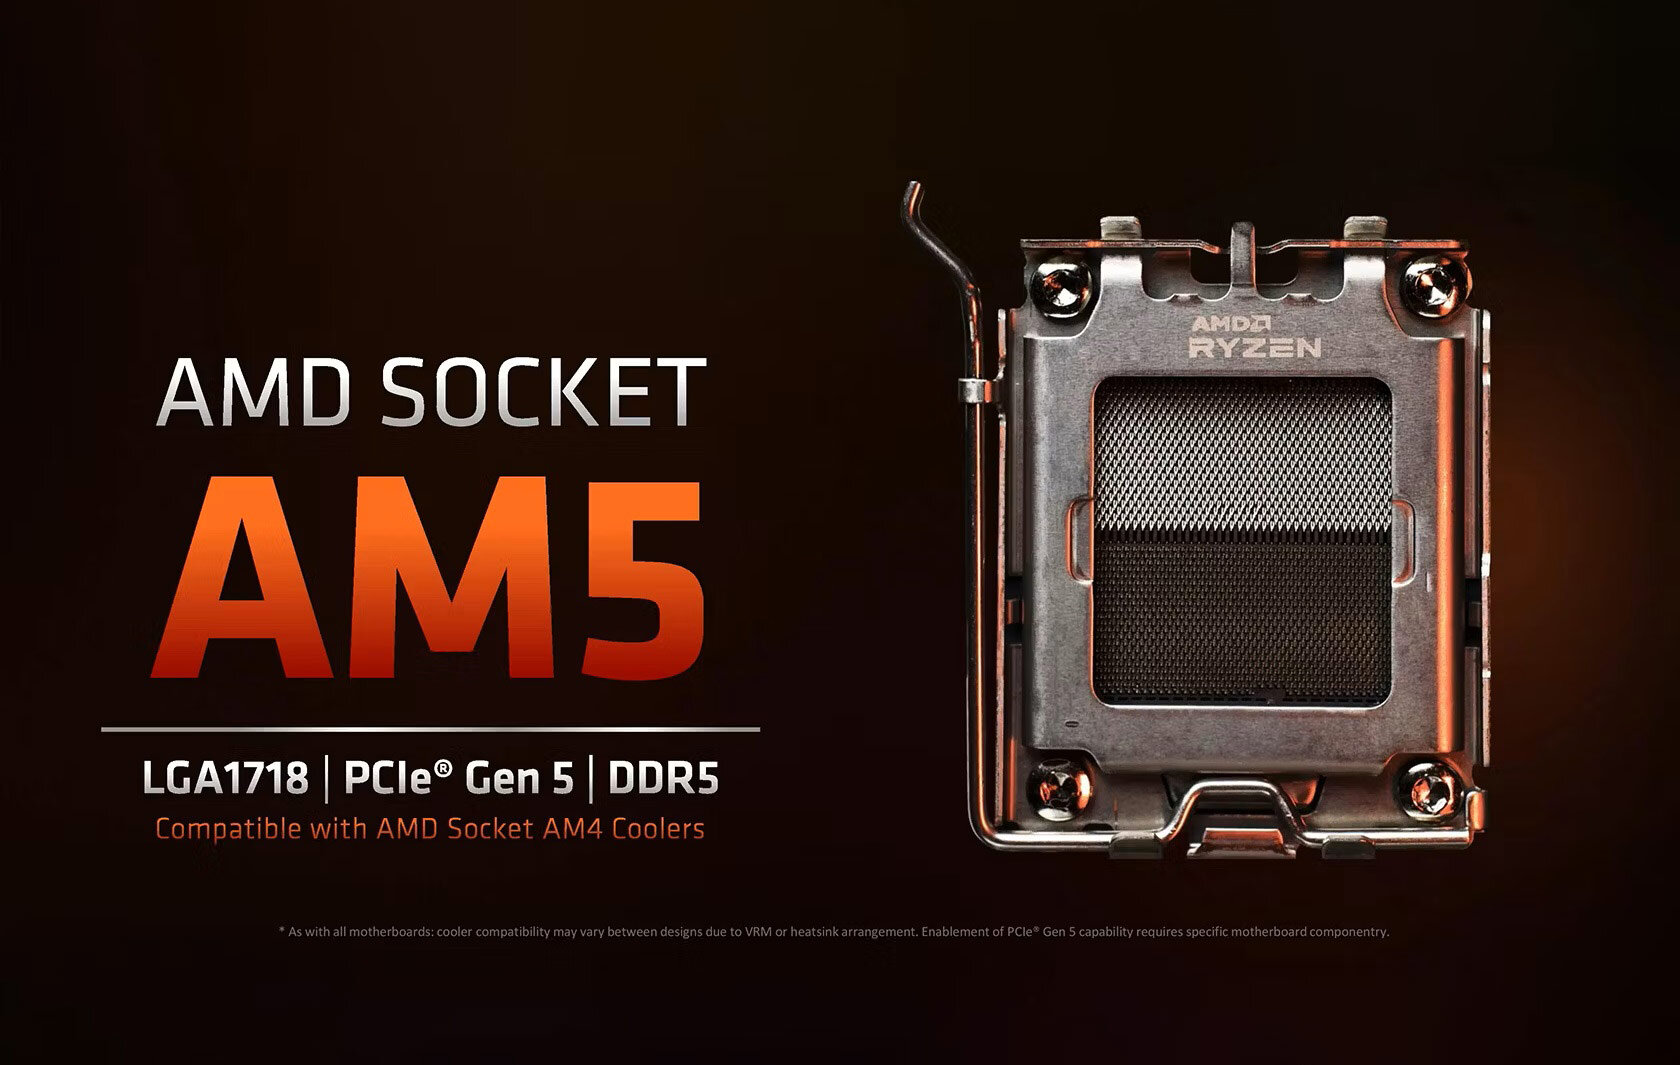 Η AMD θα υποστηρίξει το socket AM5 με νέα προϊόντα μέχρι τουλάχιστον το 2025